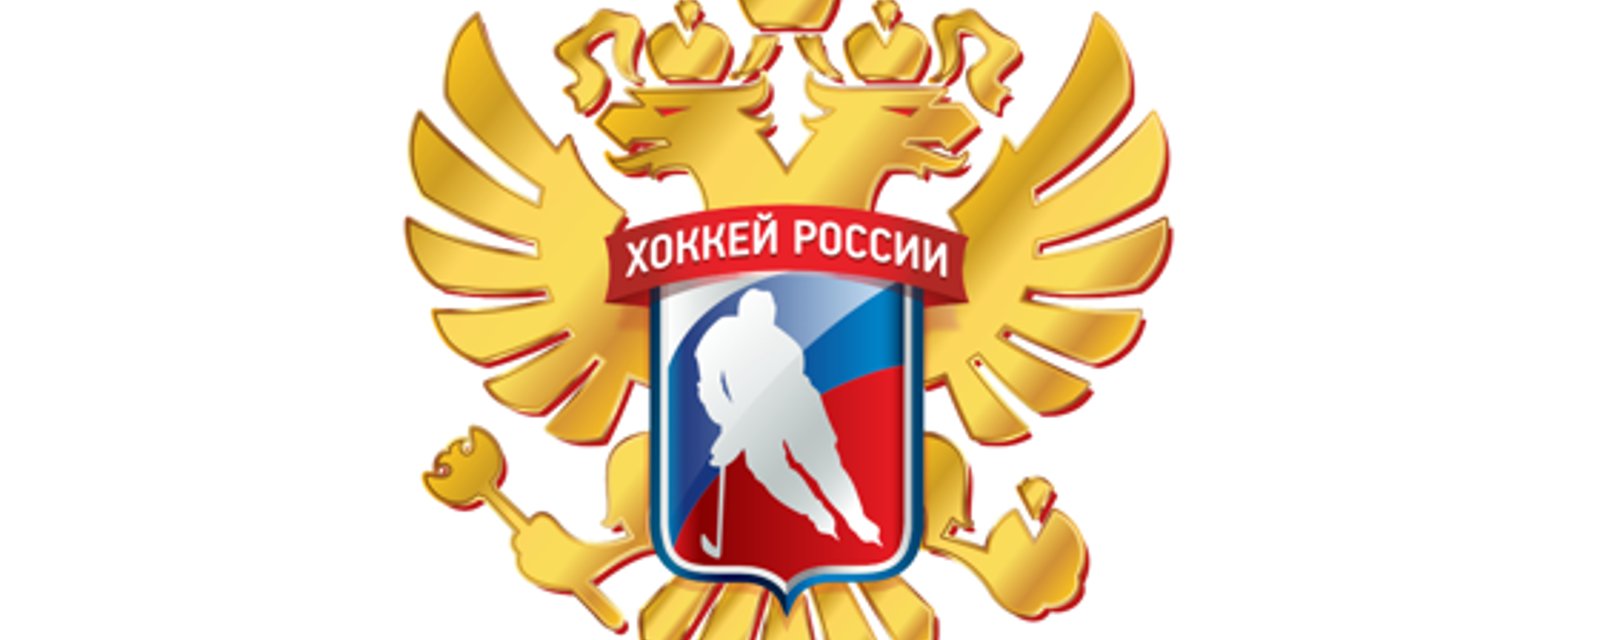 La fédération de hockey russe réagit au bannissement de ses joueurs dans les évènements internationaux